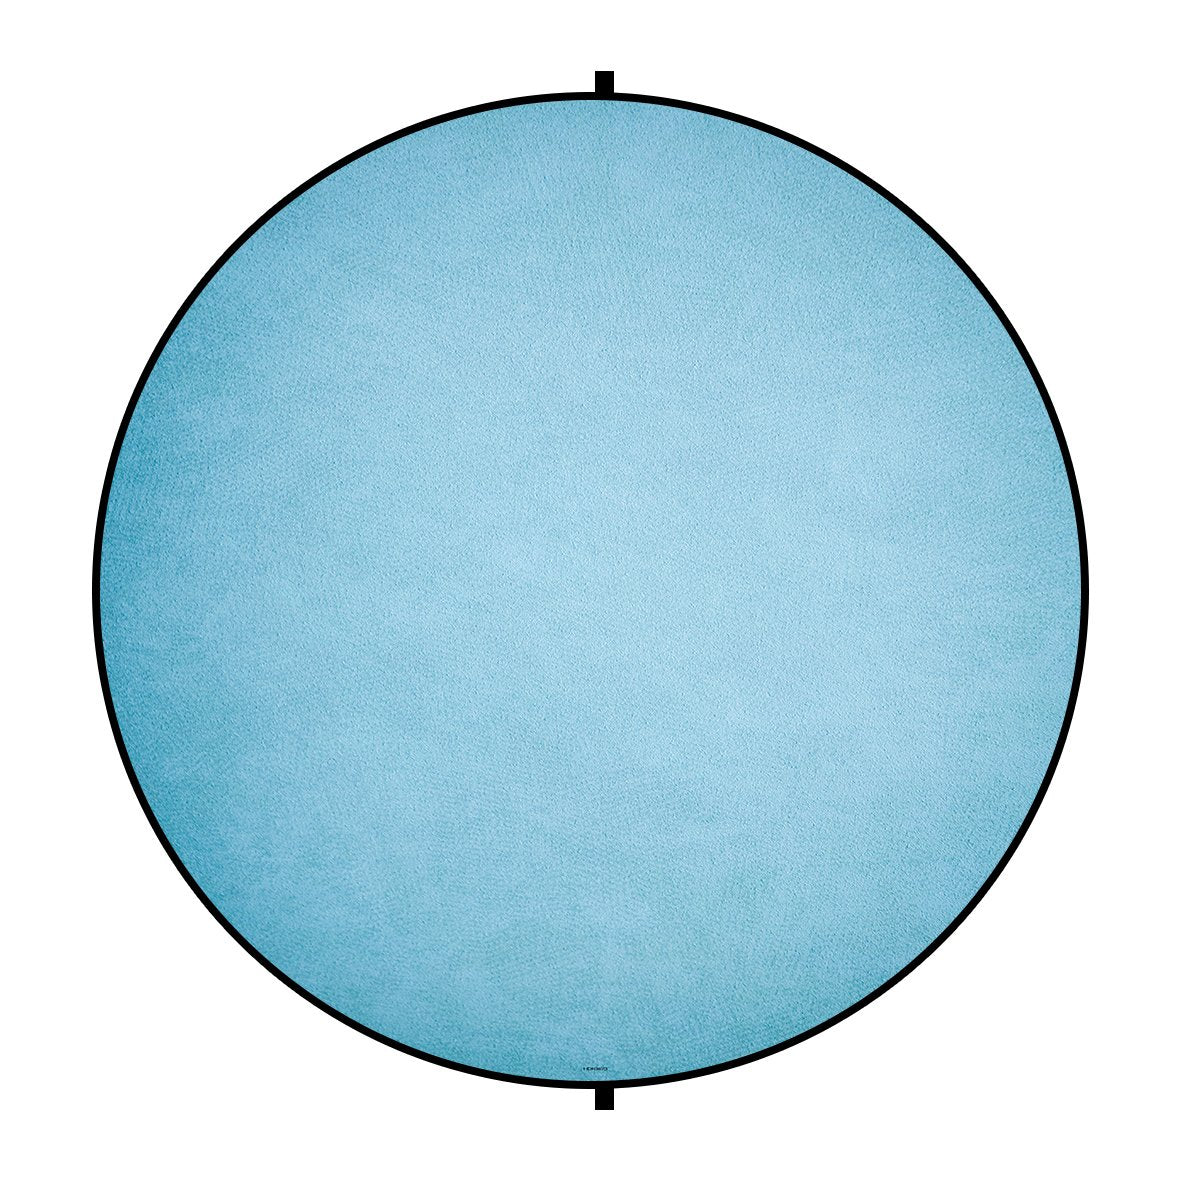 Kate Double-face Rond Bois blanc/Abstrait Bleu Photographie Toile de fond Pliable 5x5pi(1.5x1.5m)